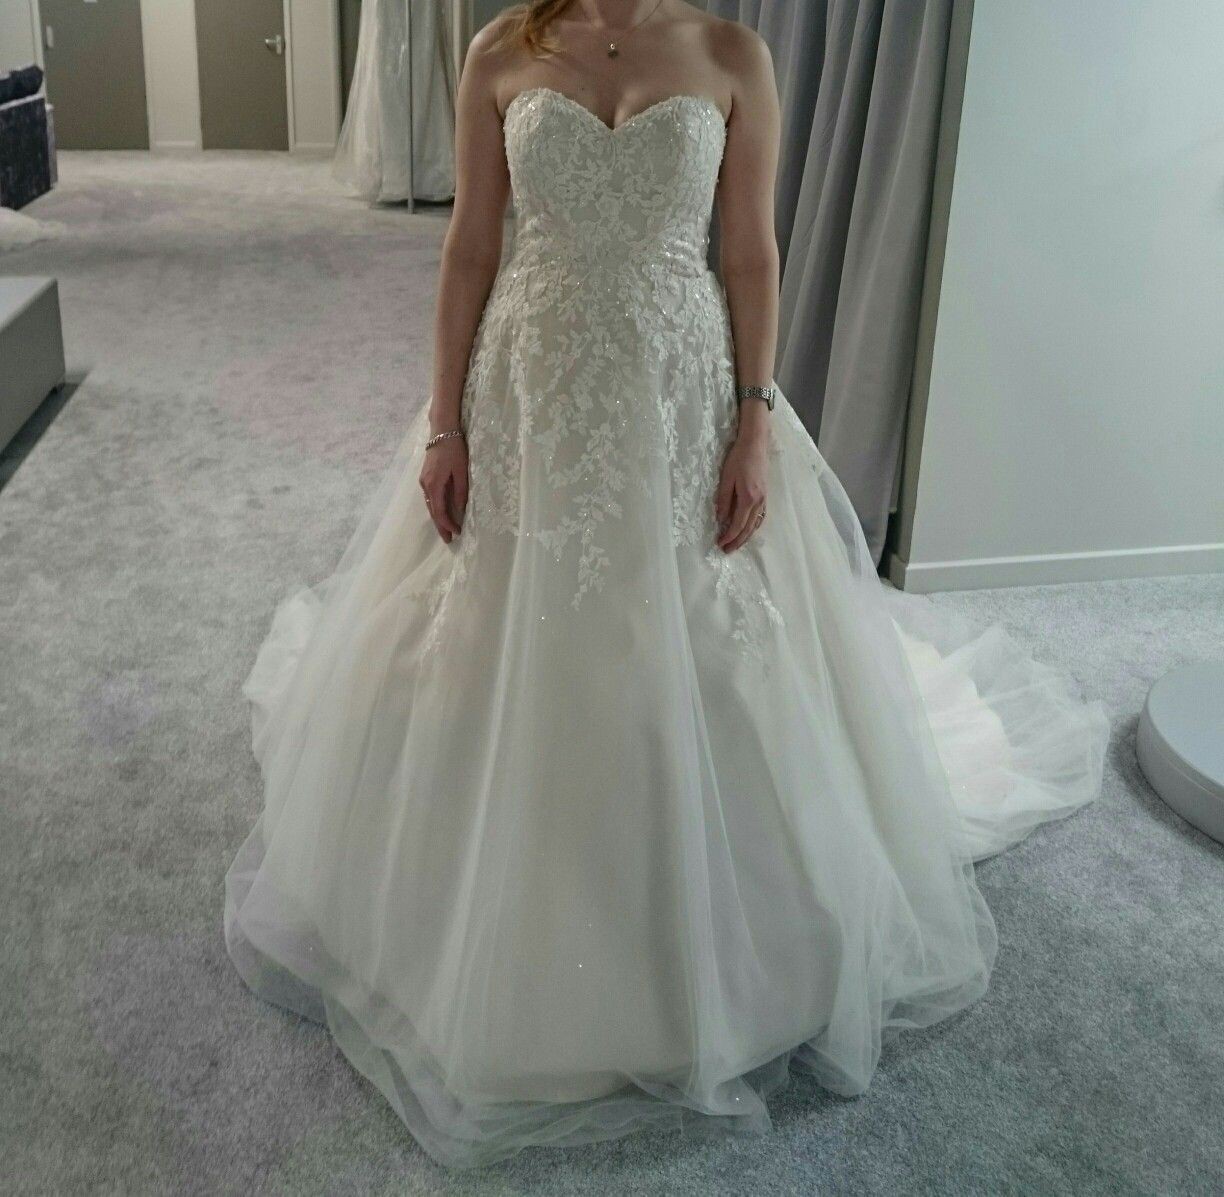 60%　Save　Dress　New　Wedding　Maddie　Wed2b　Stillwhite